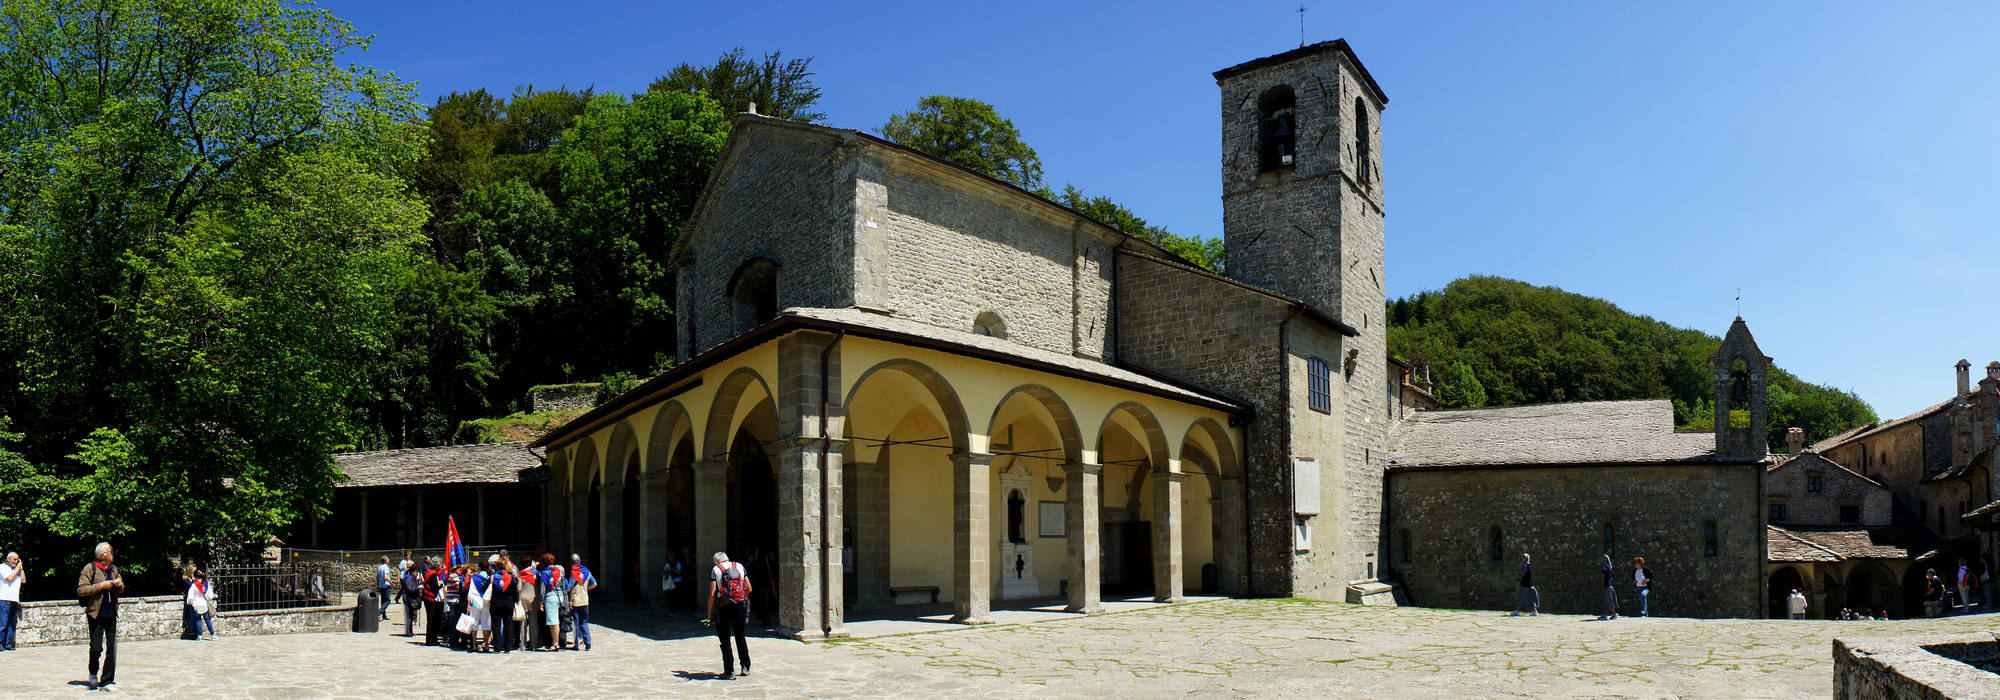 Cammino di Assisi